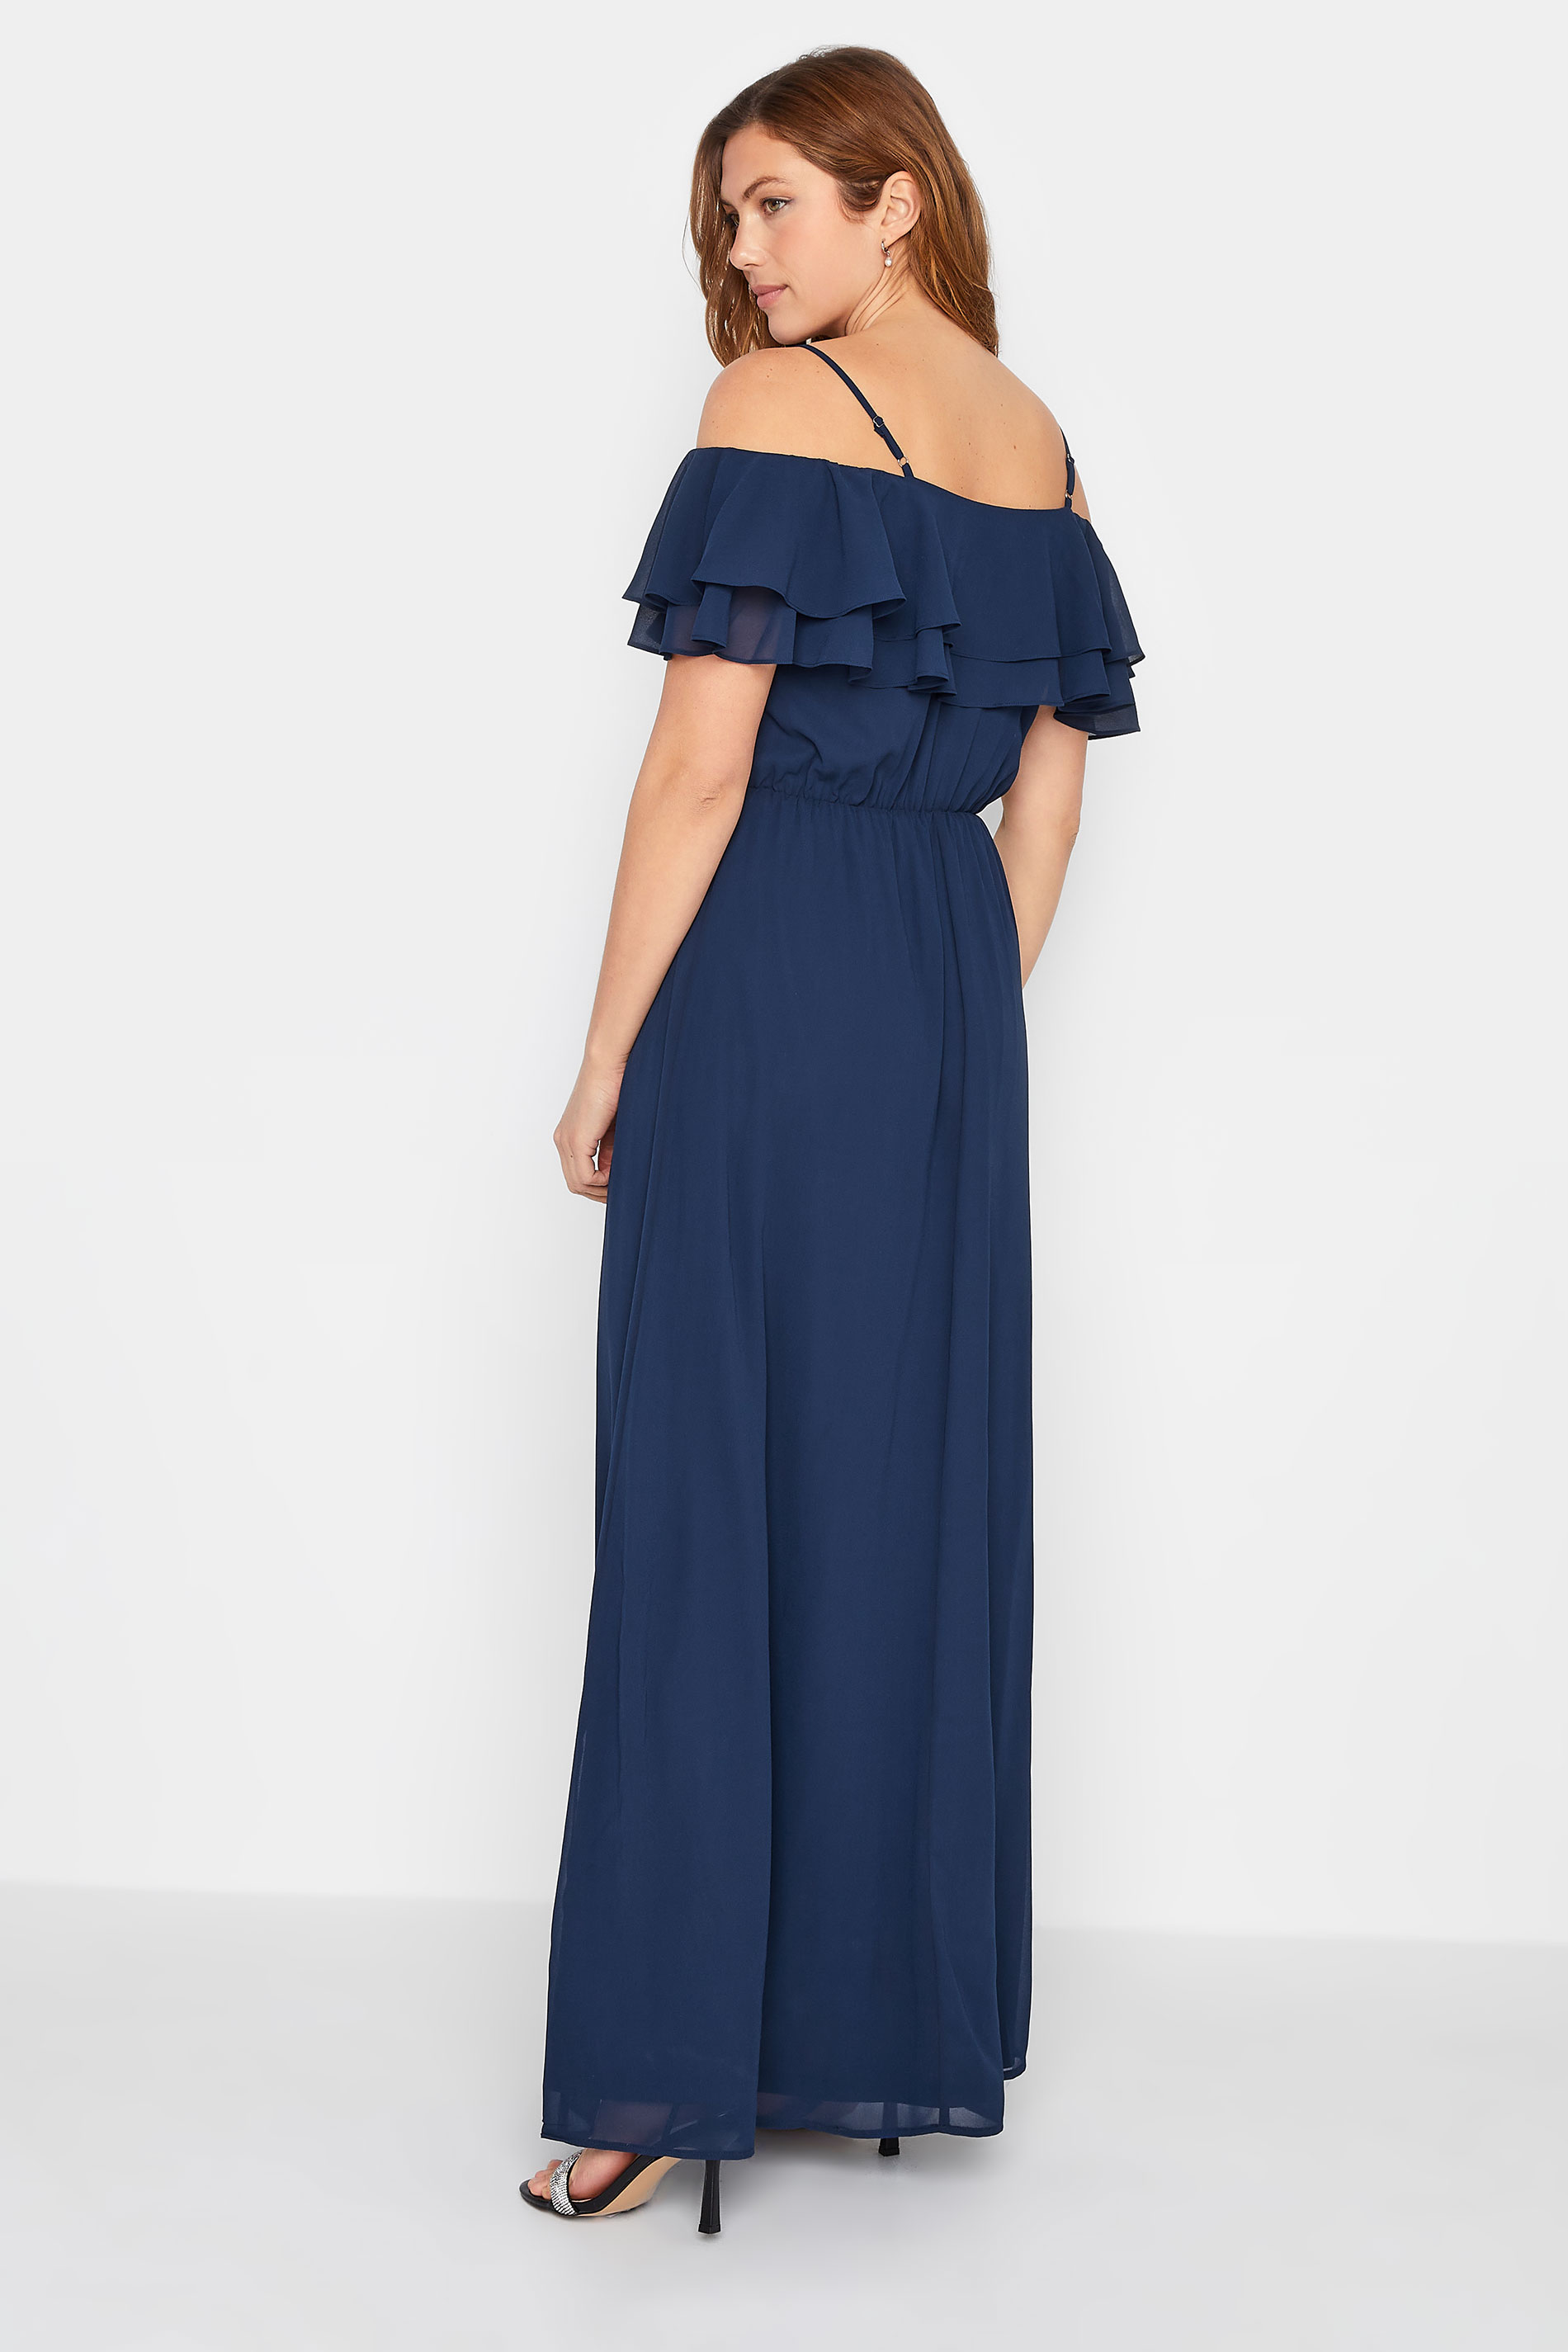 LTS Tall Women's Navy Blue Ruffle Maxi Dress | Long Tall Sally  3